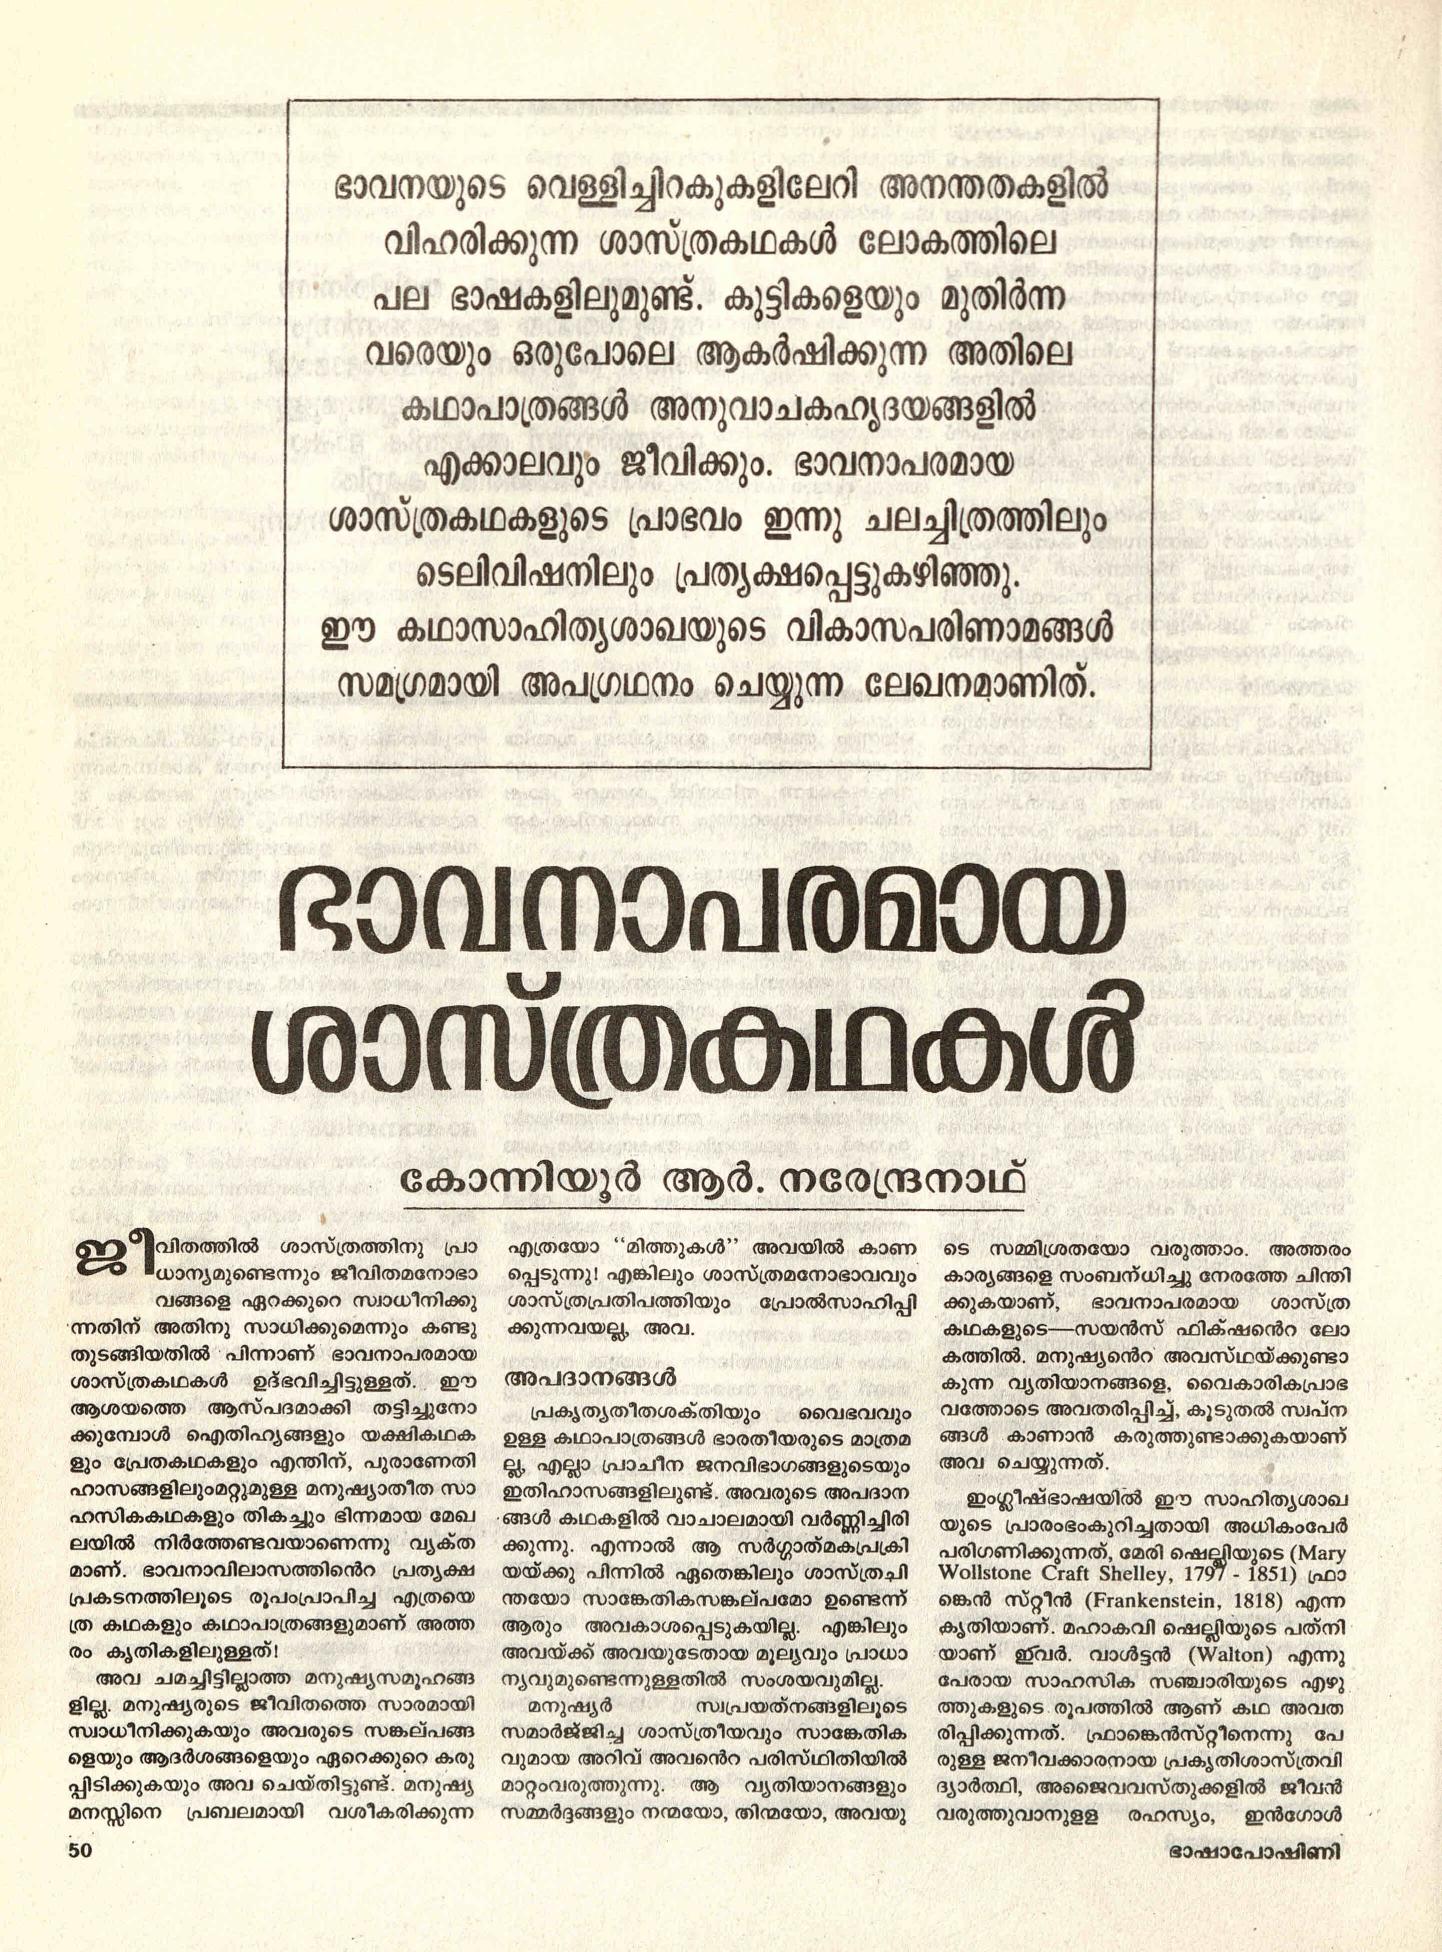 1989 - ഭാവനാപരമായ ശാസ്ത്രകഥകൾ - കോന്നിയൂർ ആർ നരേന്ദ്രനാഥ്